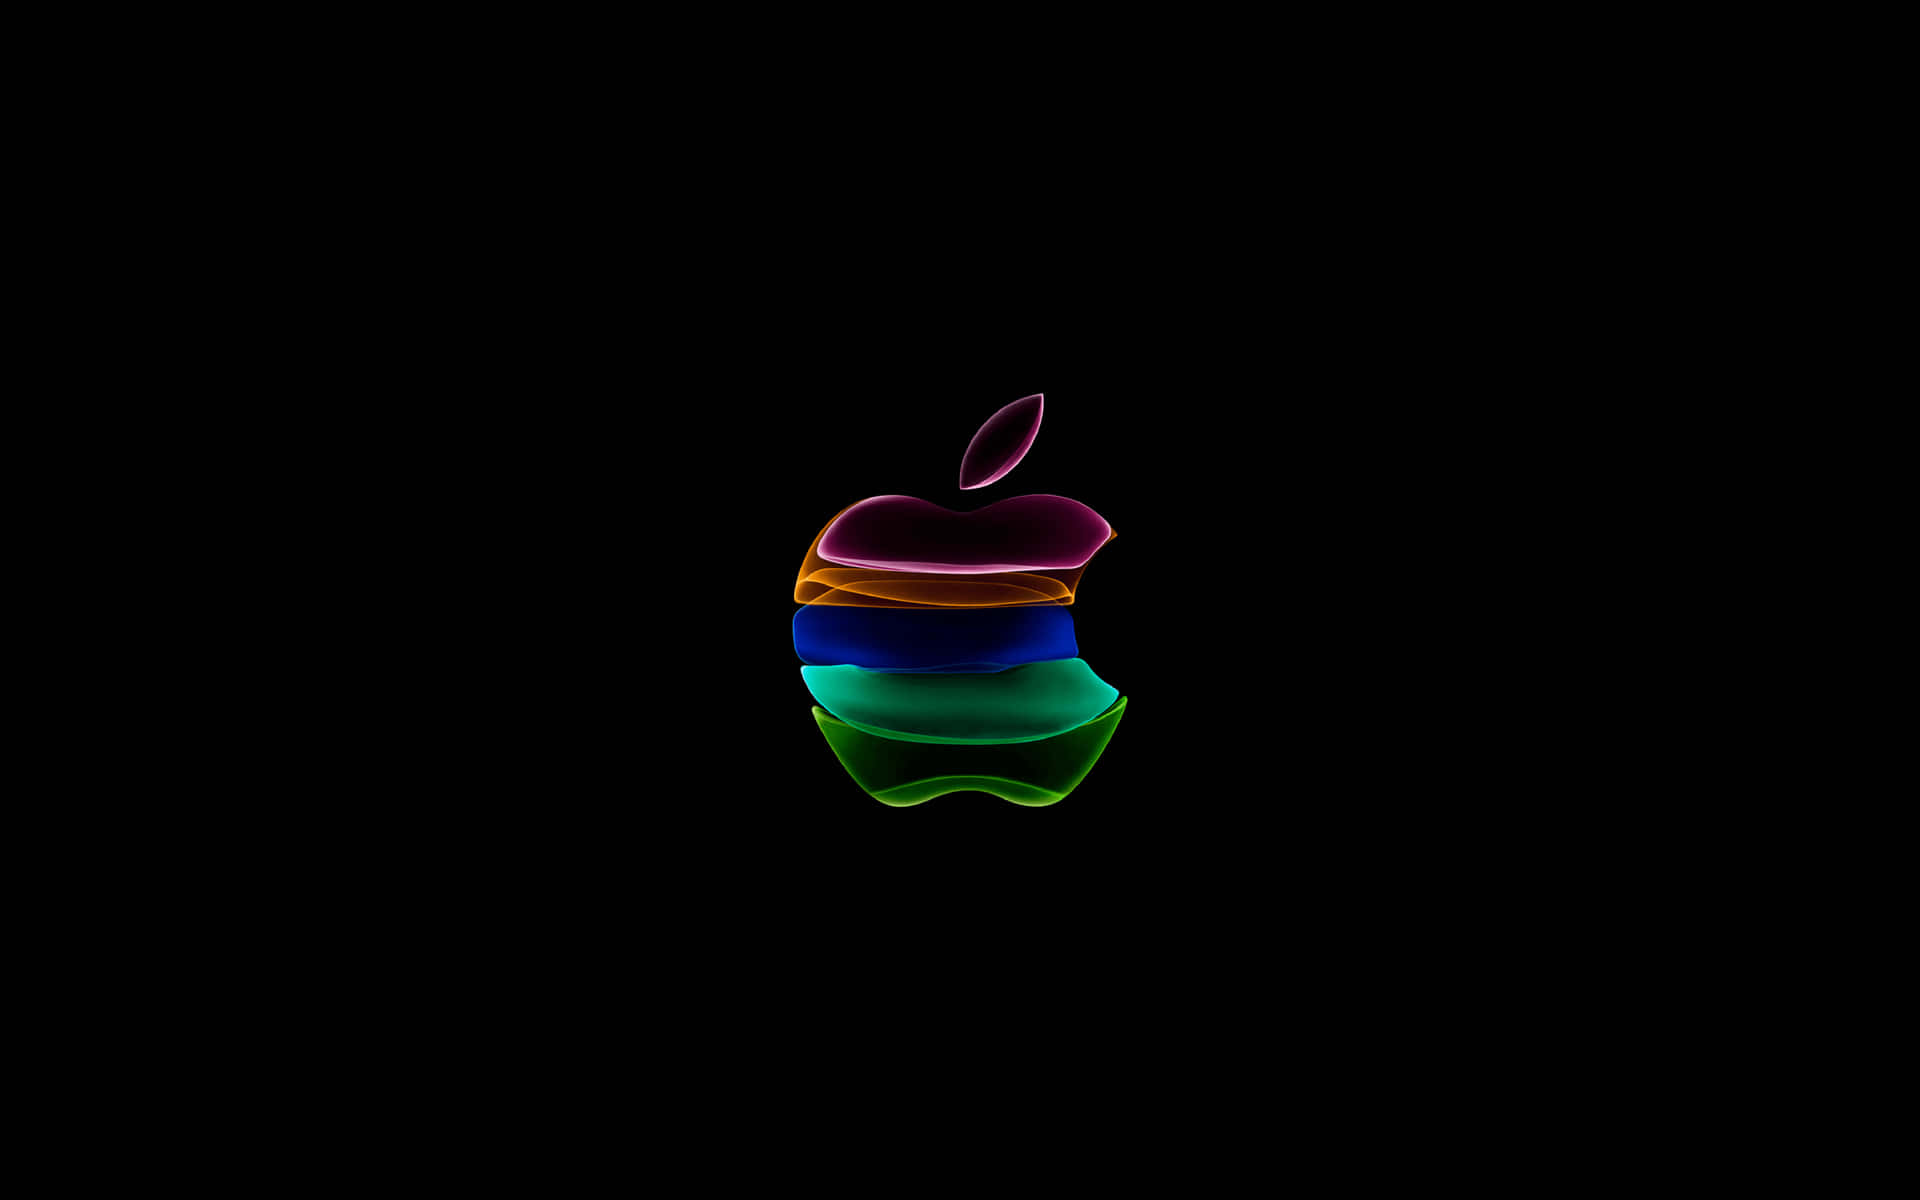 Logotipoda Apple 3840 X 2400 Como Plano De Fundo.